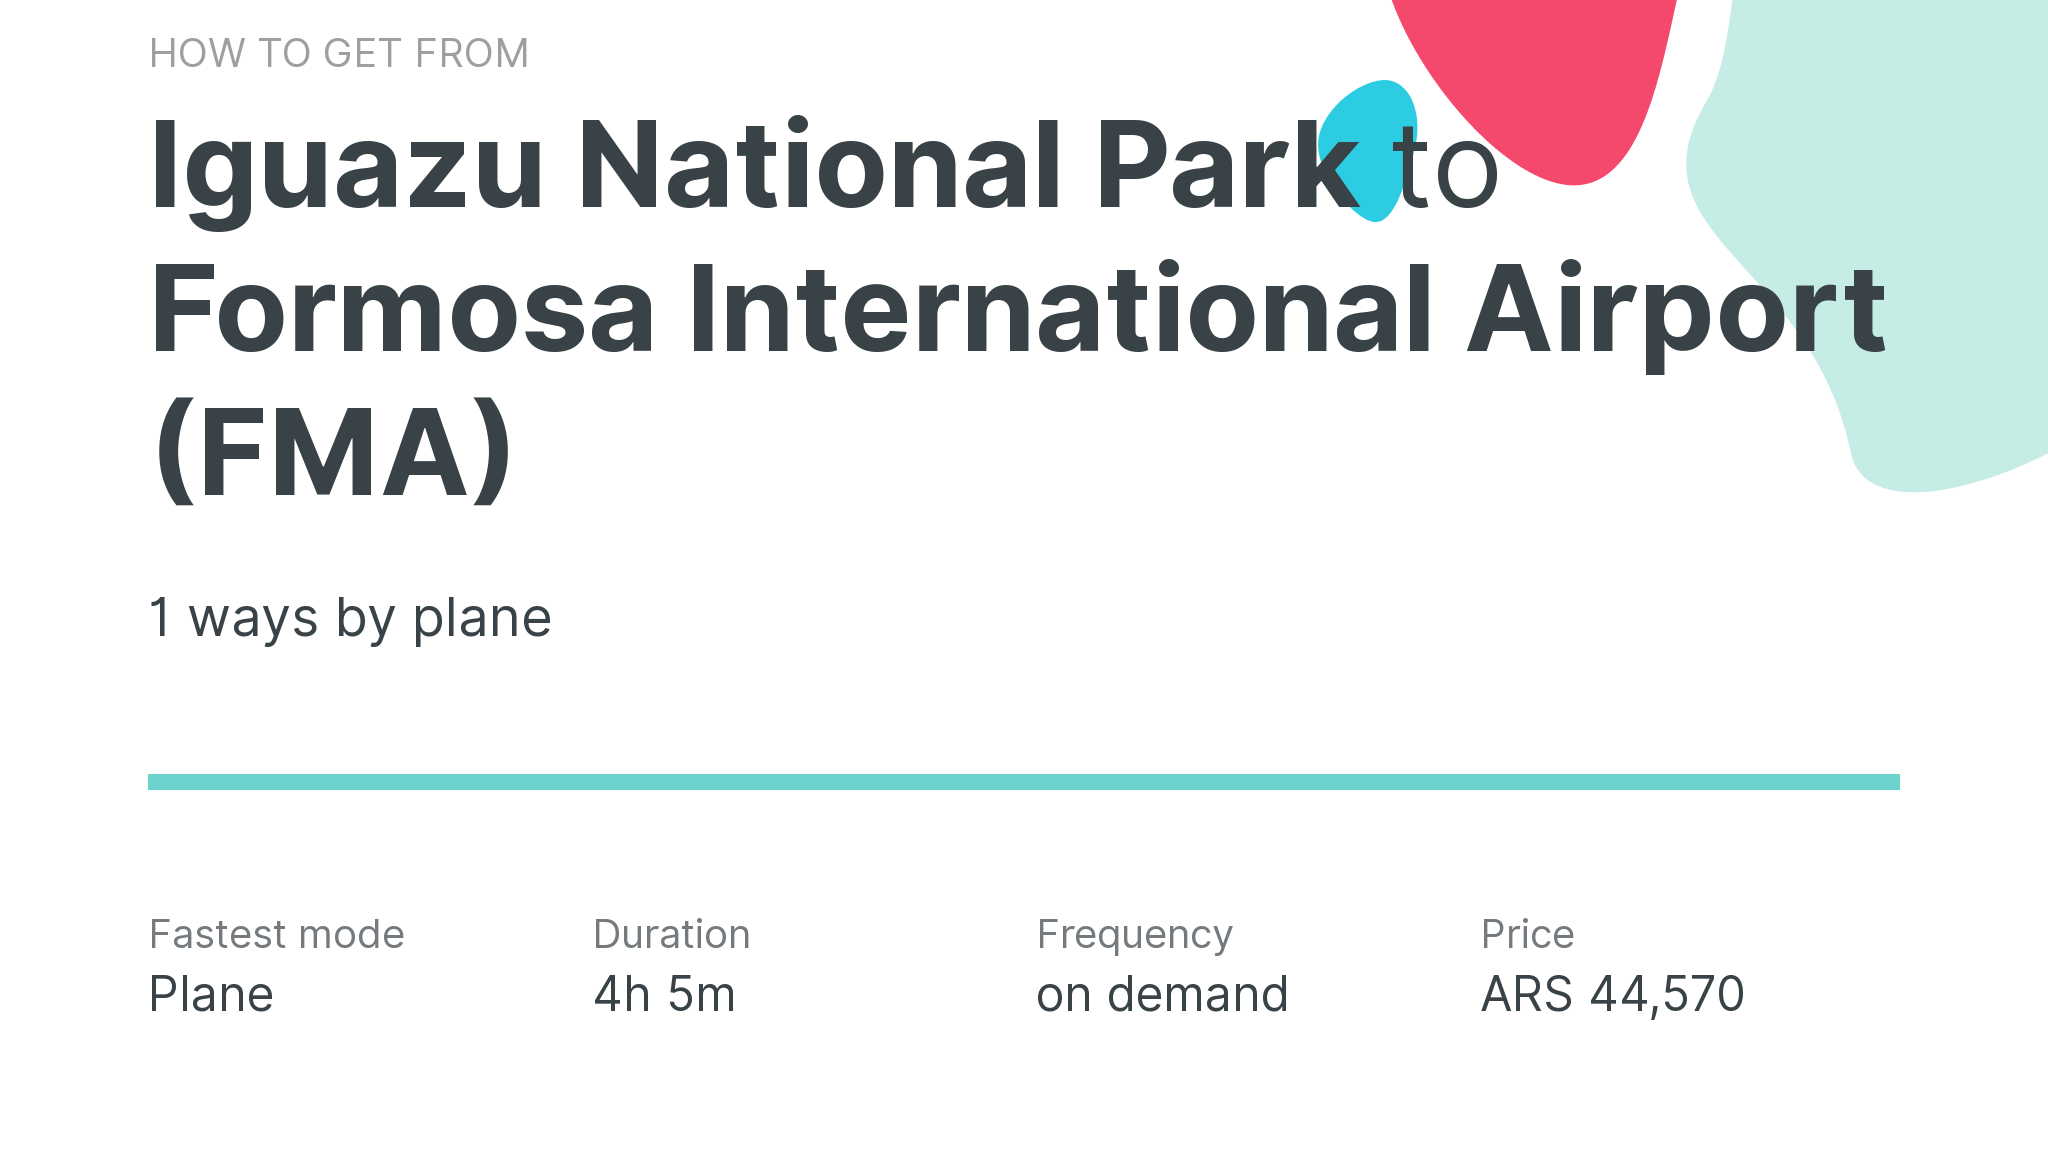 How do I get from Iguazu National Park to Formosa International Airport (FMA)